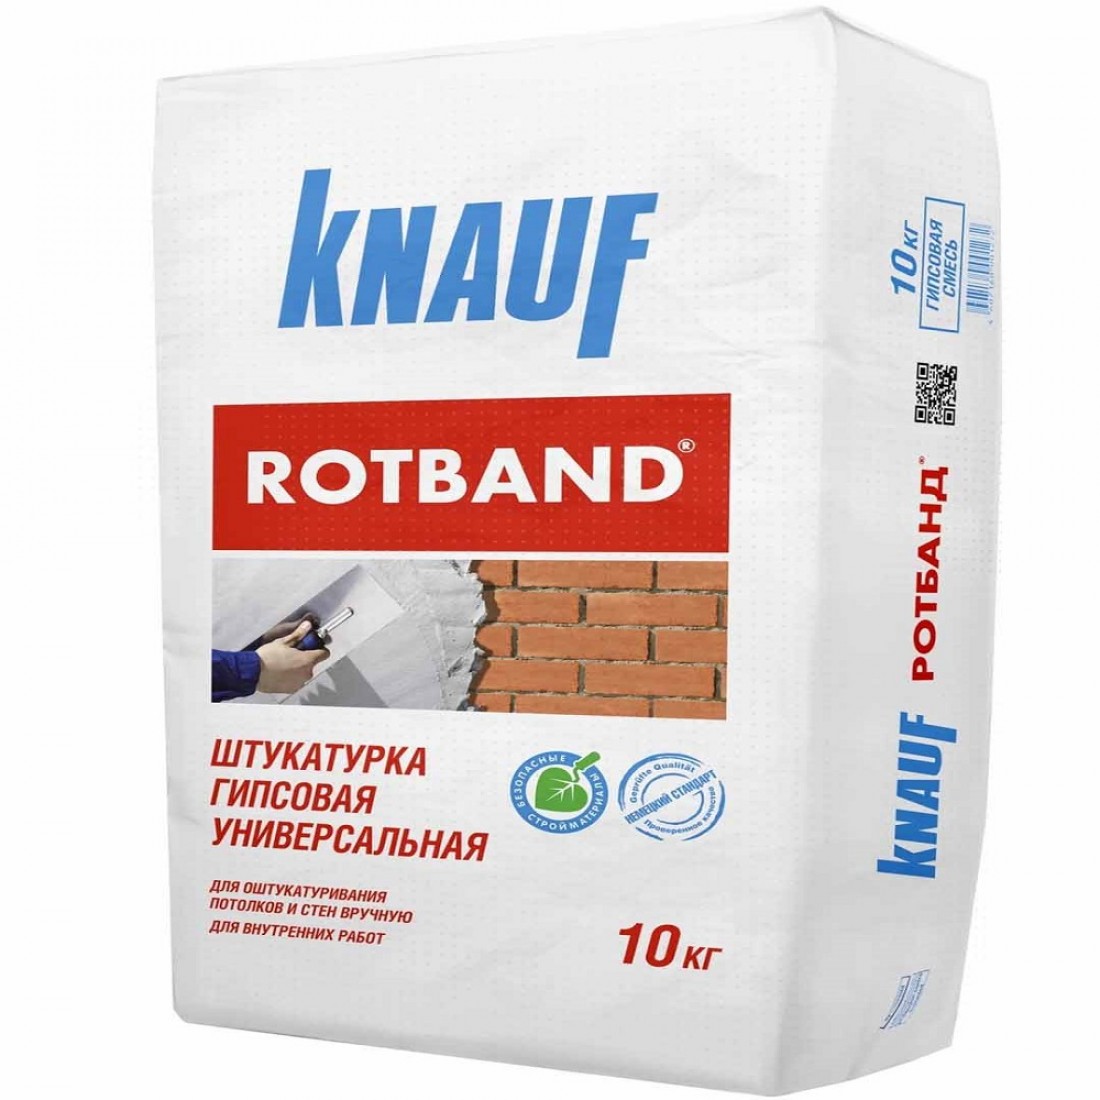 Ротбанд кнауф кг купить. Кнауф штукатурка гипсовая 30 кг. Штукатурка гипсовая Кнауф Ротбанд (Knauf Rotband). Штукатурка гипсовая Knauf Ротбанд 25 кг. Штукатурка гипсовая Knauf Ротбанд 30 кг.